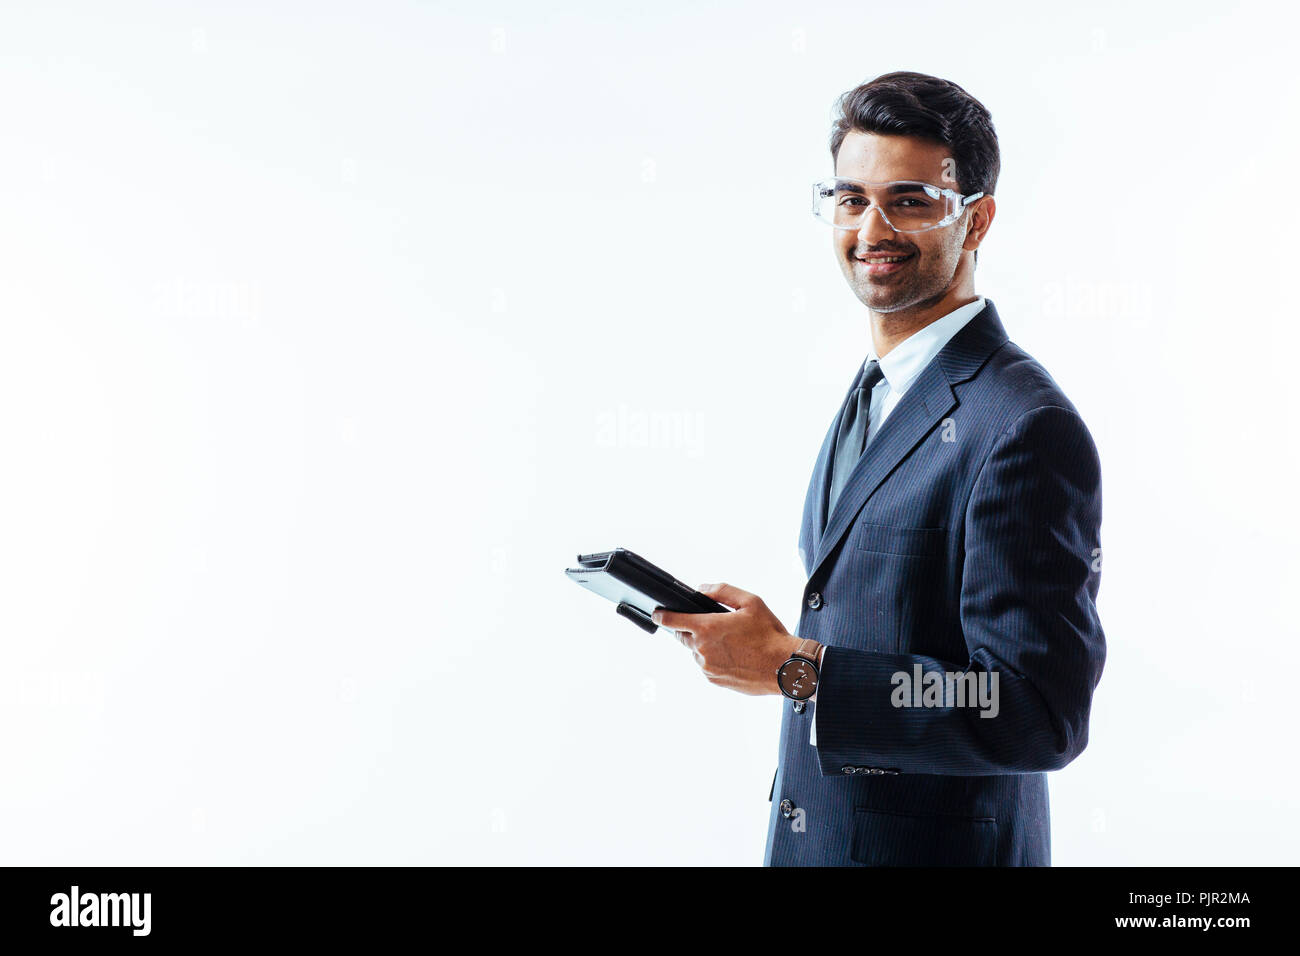 Retrato del hombre en traje de negocios la celebración de tableta electrónica pad y gafas protectoras mirando a la cámara, aislado sobre fondo blanco studio Foto de stock